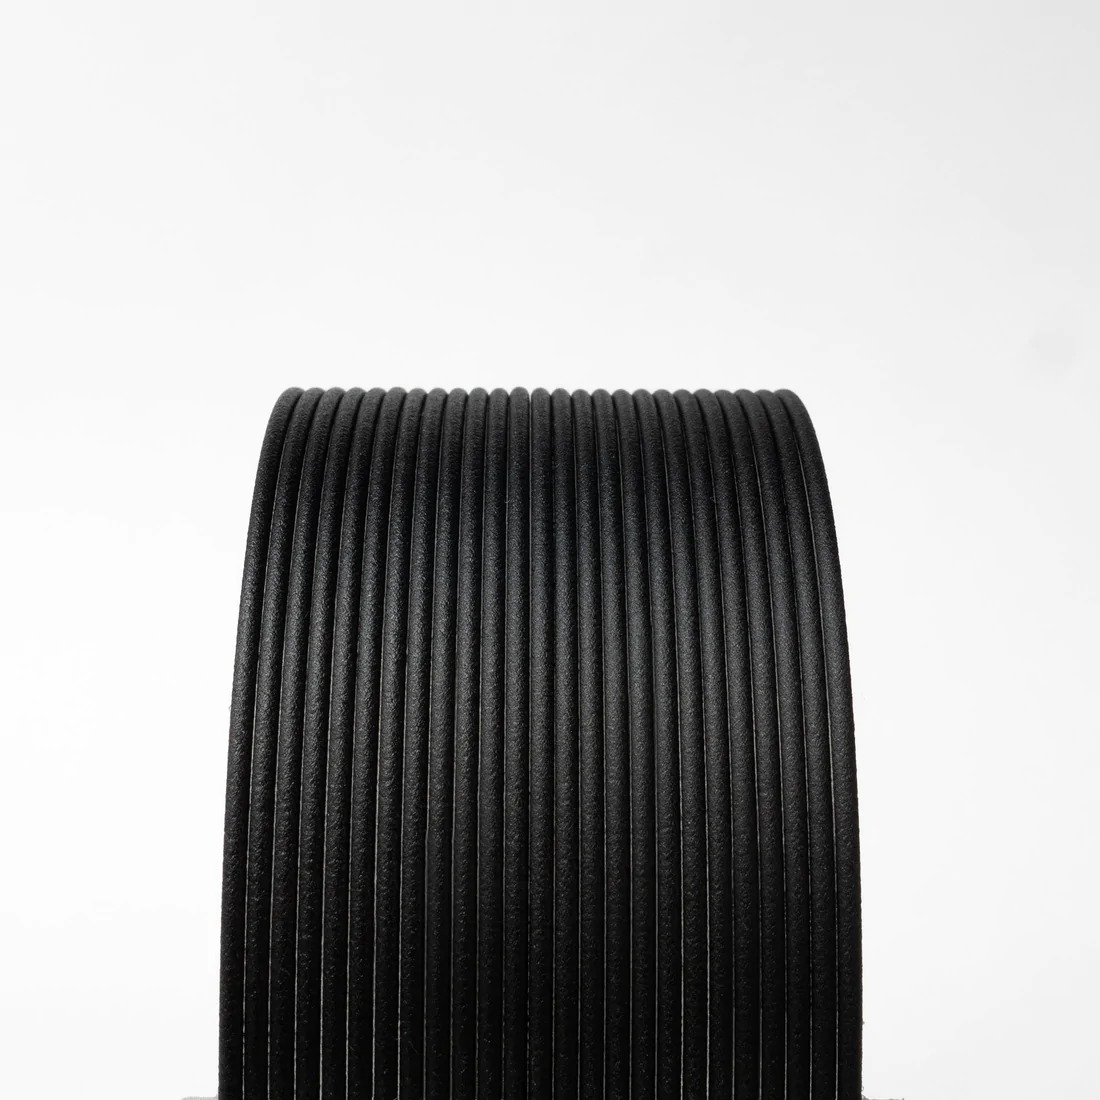 High Temp Carbon Fibre PLA Black V2.0  1.75mm